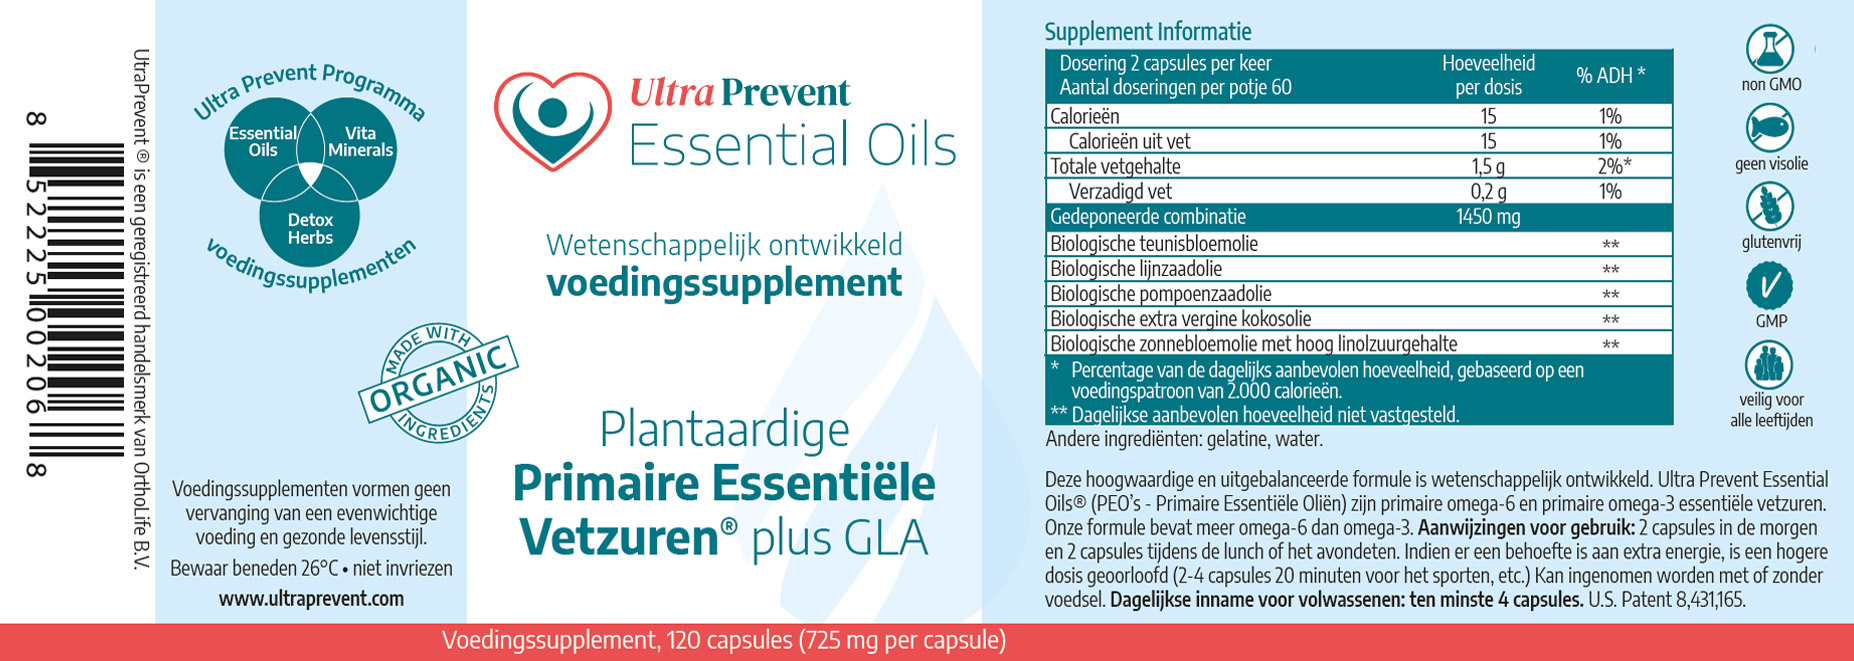 Etiket Essential Oils